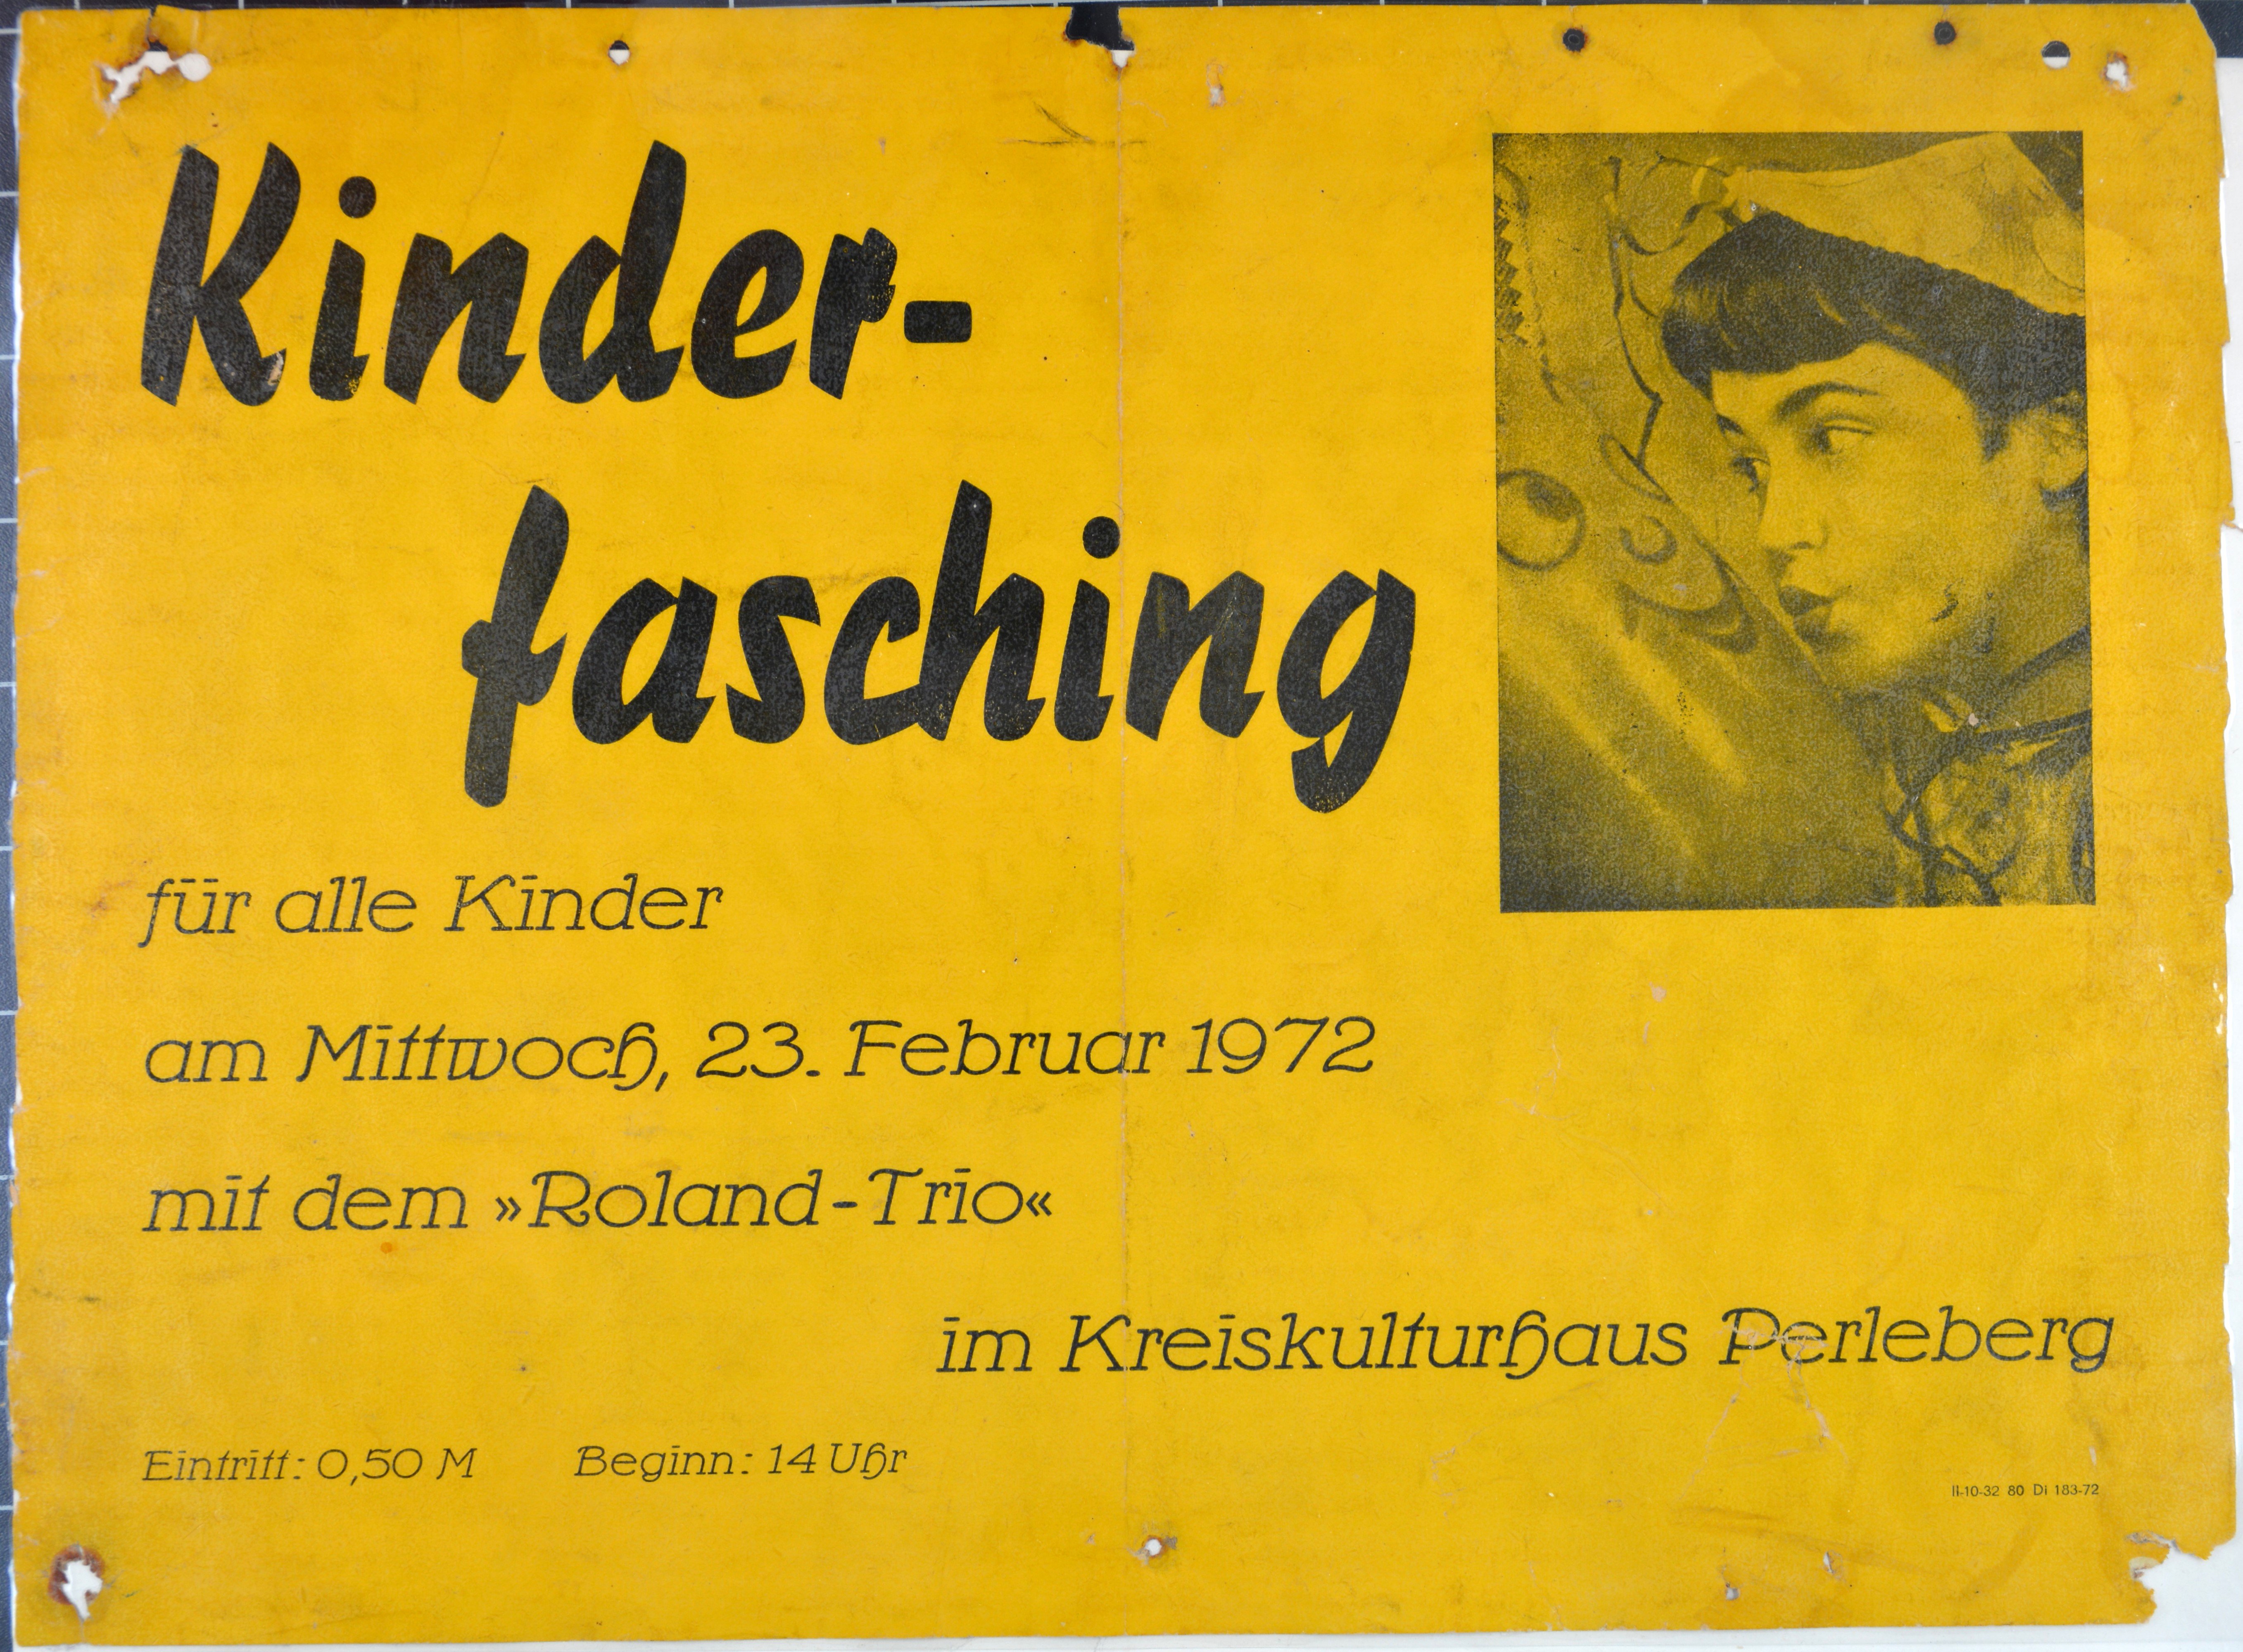 Plakat: Kinderfasching mit dem Roland-Trio im Kreiskulturhaus Perleberg am 23. Februar 1972 (DDR Geschichtsmuseum im Dokumentationszentrum Perleberg CC BY-SA)